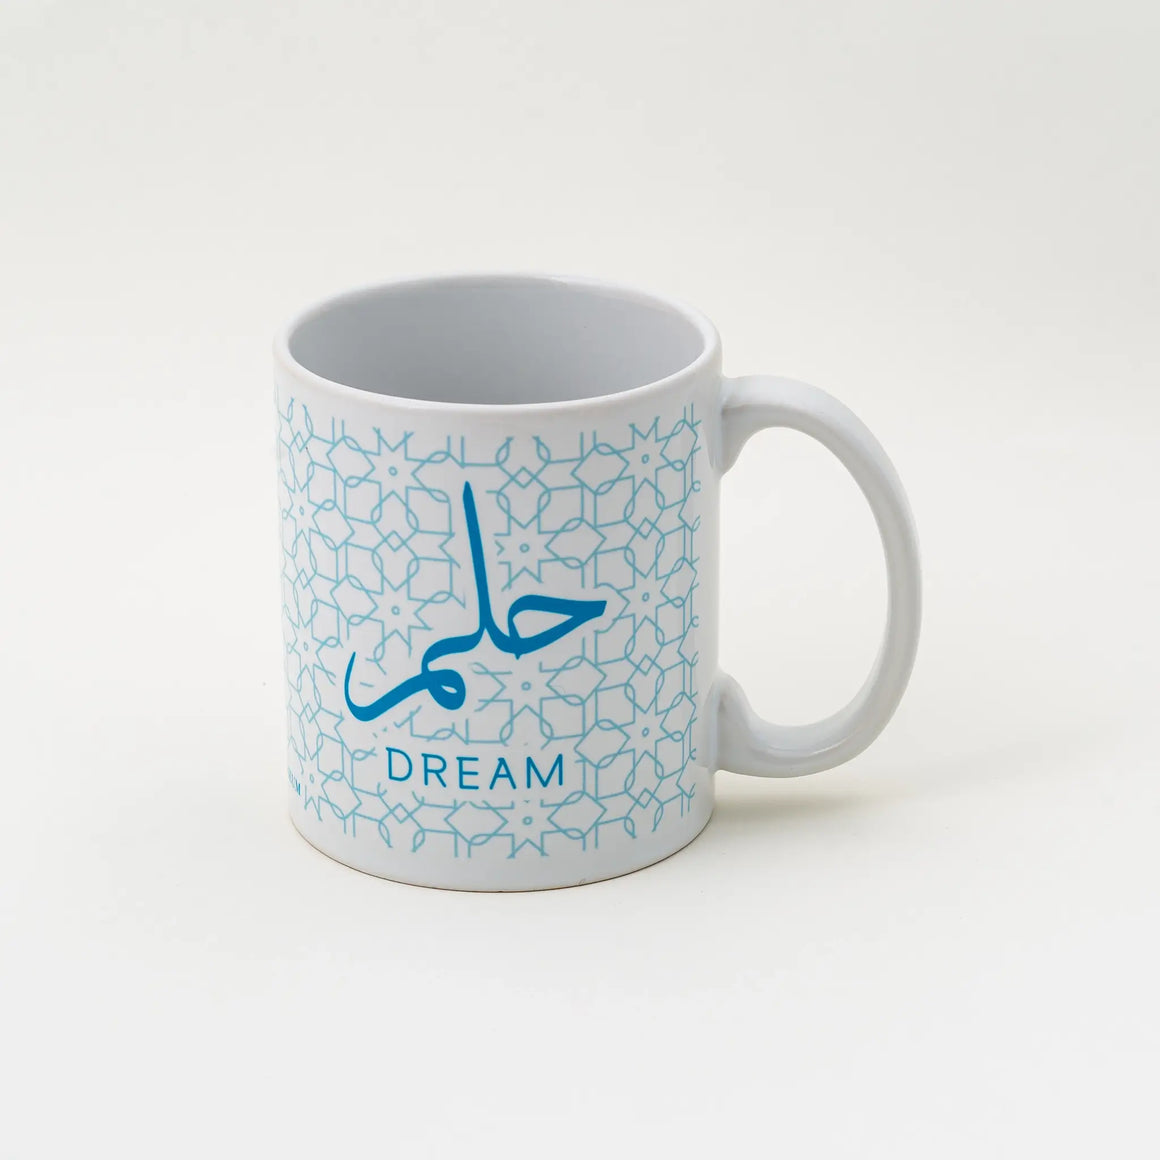 Aga Khan Museum Calligraphy Mug - Dream